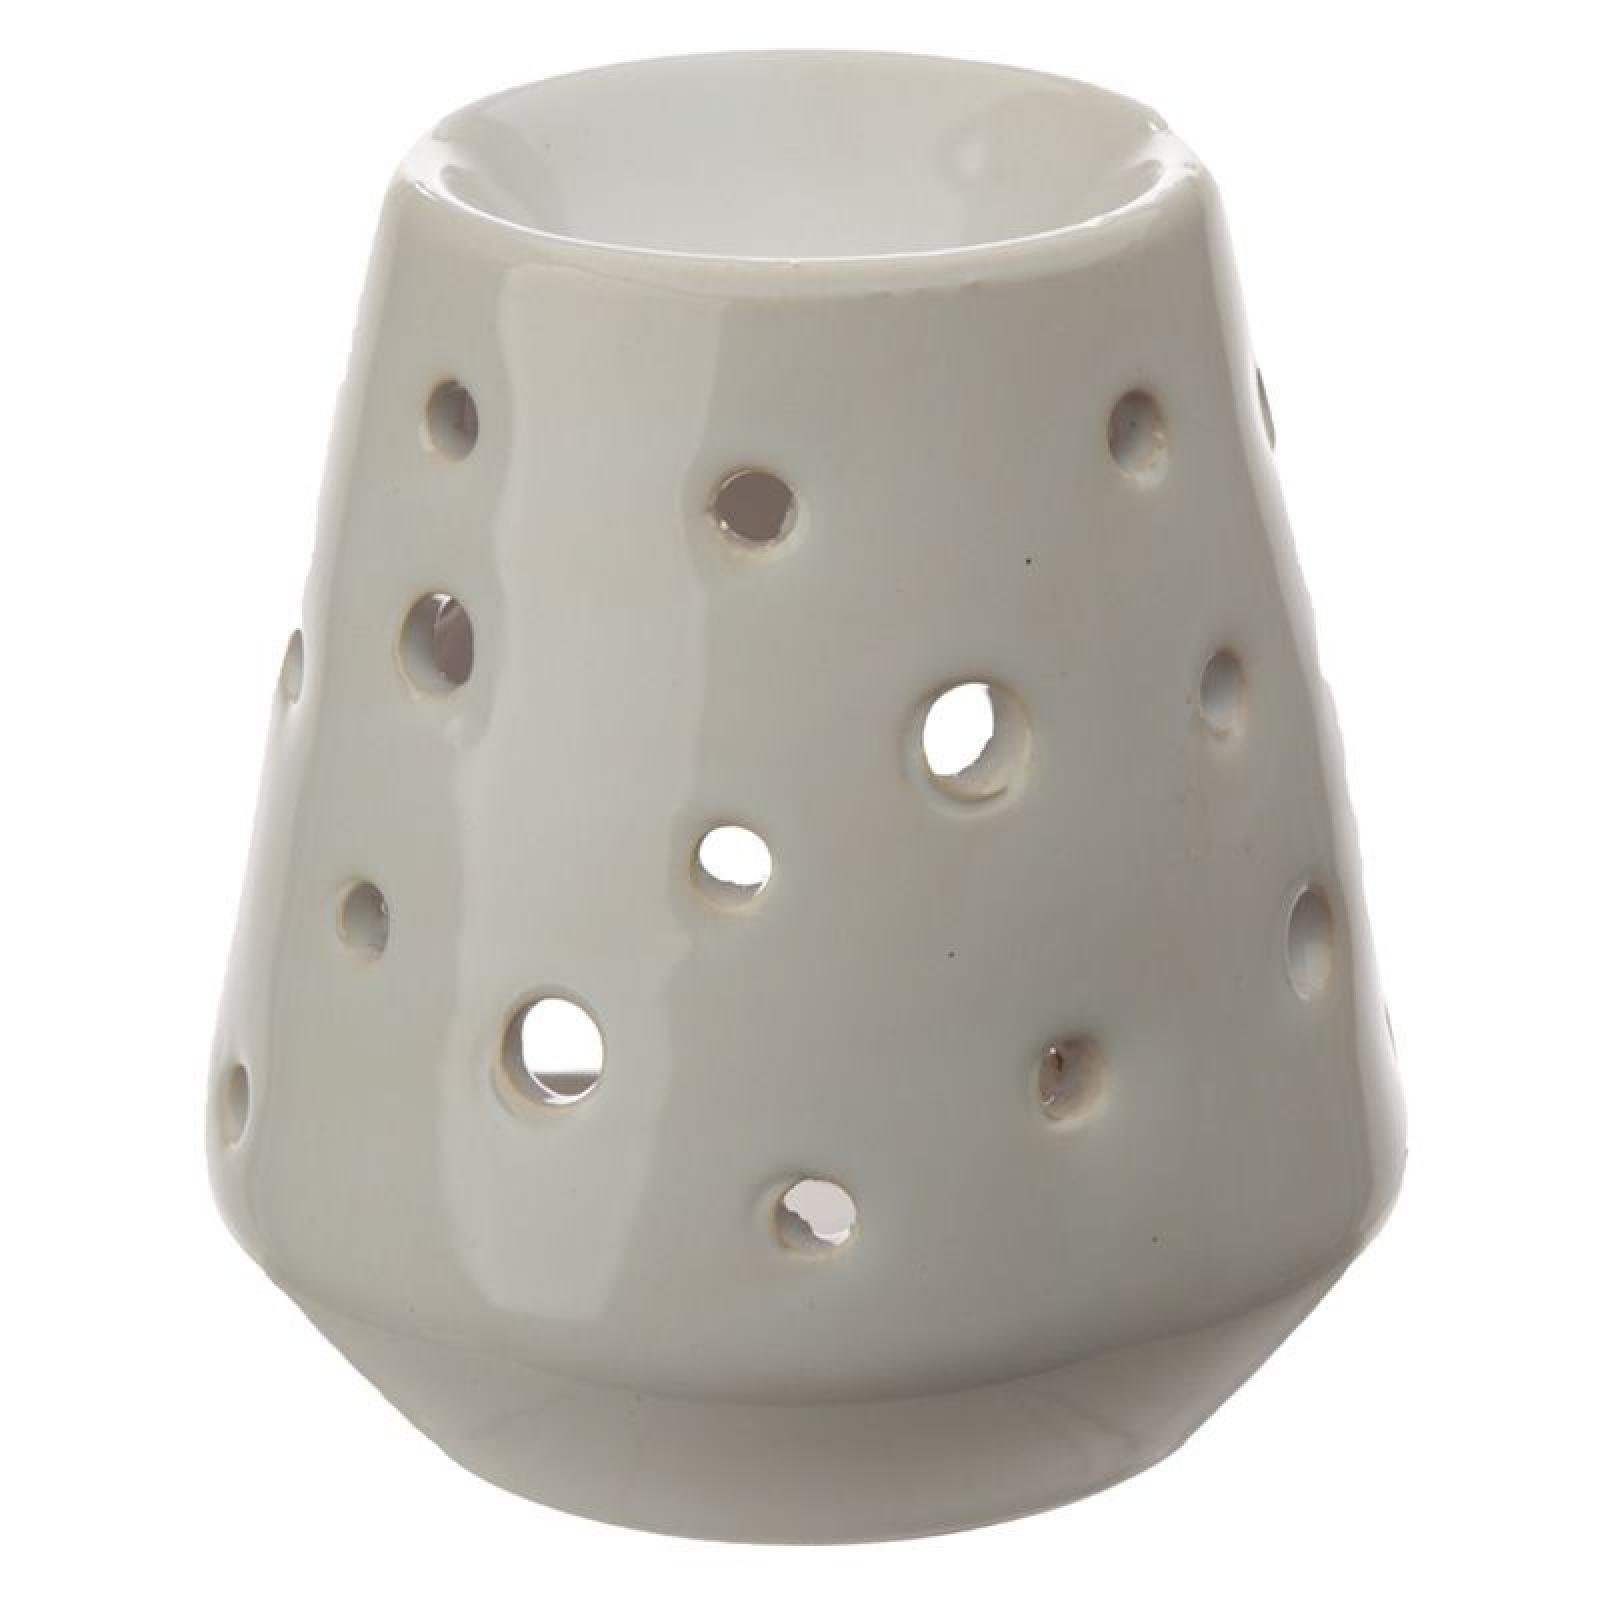 Eden Konierte Puckator mit Keramik Ausschnitten Duftlampe runden aus Duftlampe